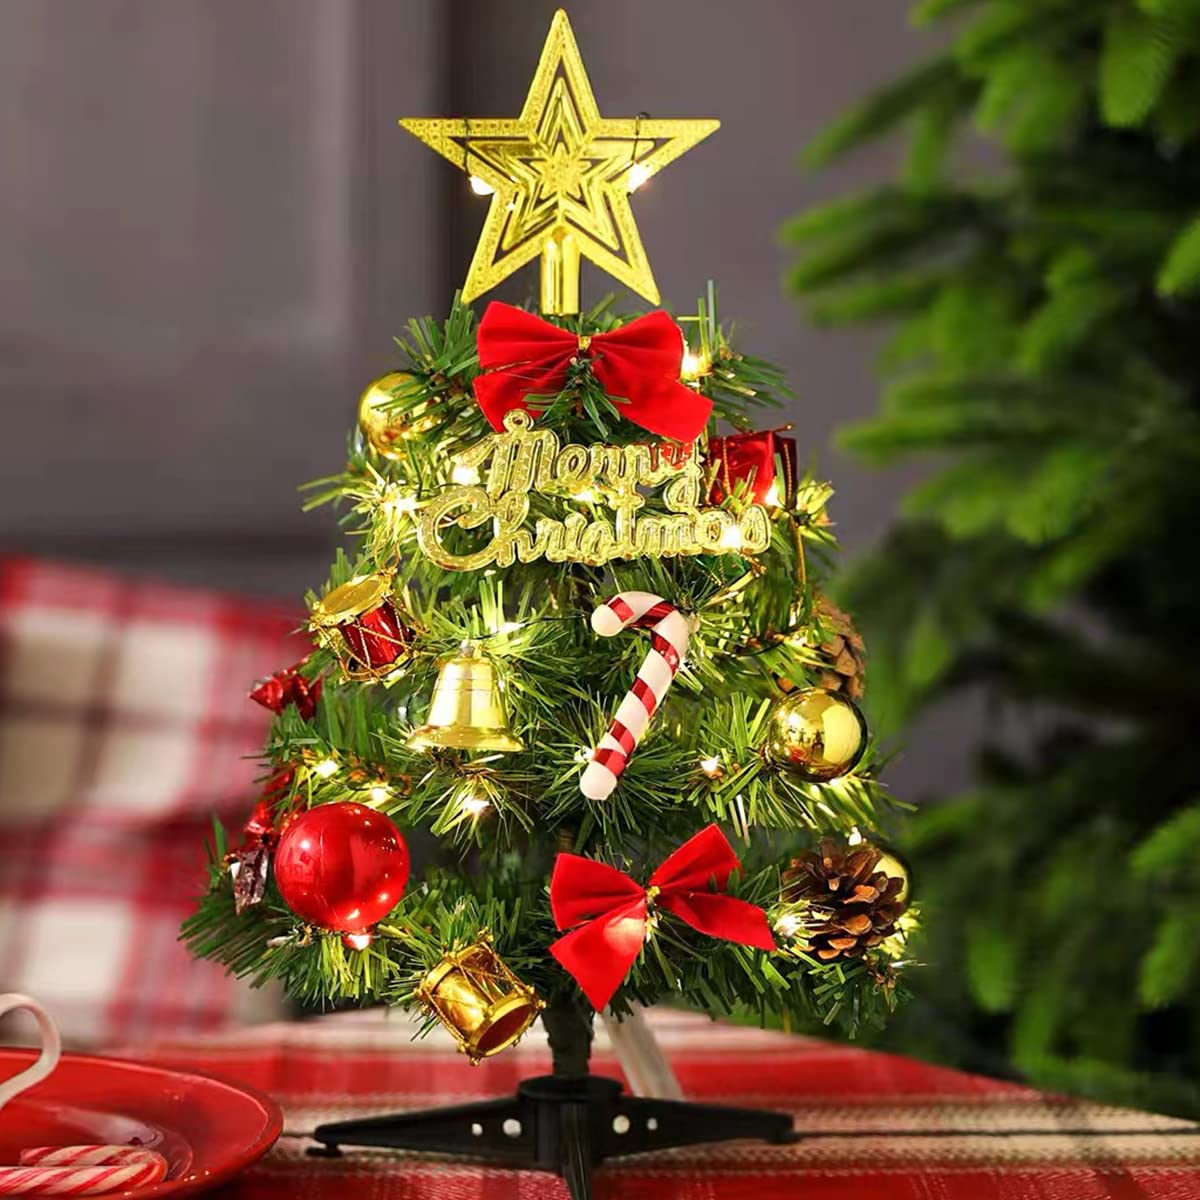 20点セット クリスマスツリー 卓上 50cm 北欧 小型 ミニツリー クリスマス飾り 常時点灯 LEDイルミネーション キラキラ 組立簡単 飾り付け おもちゃ プレゼント 雰囲気満々 暖かい